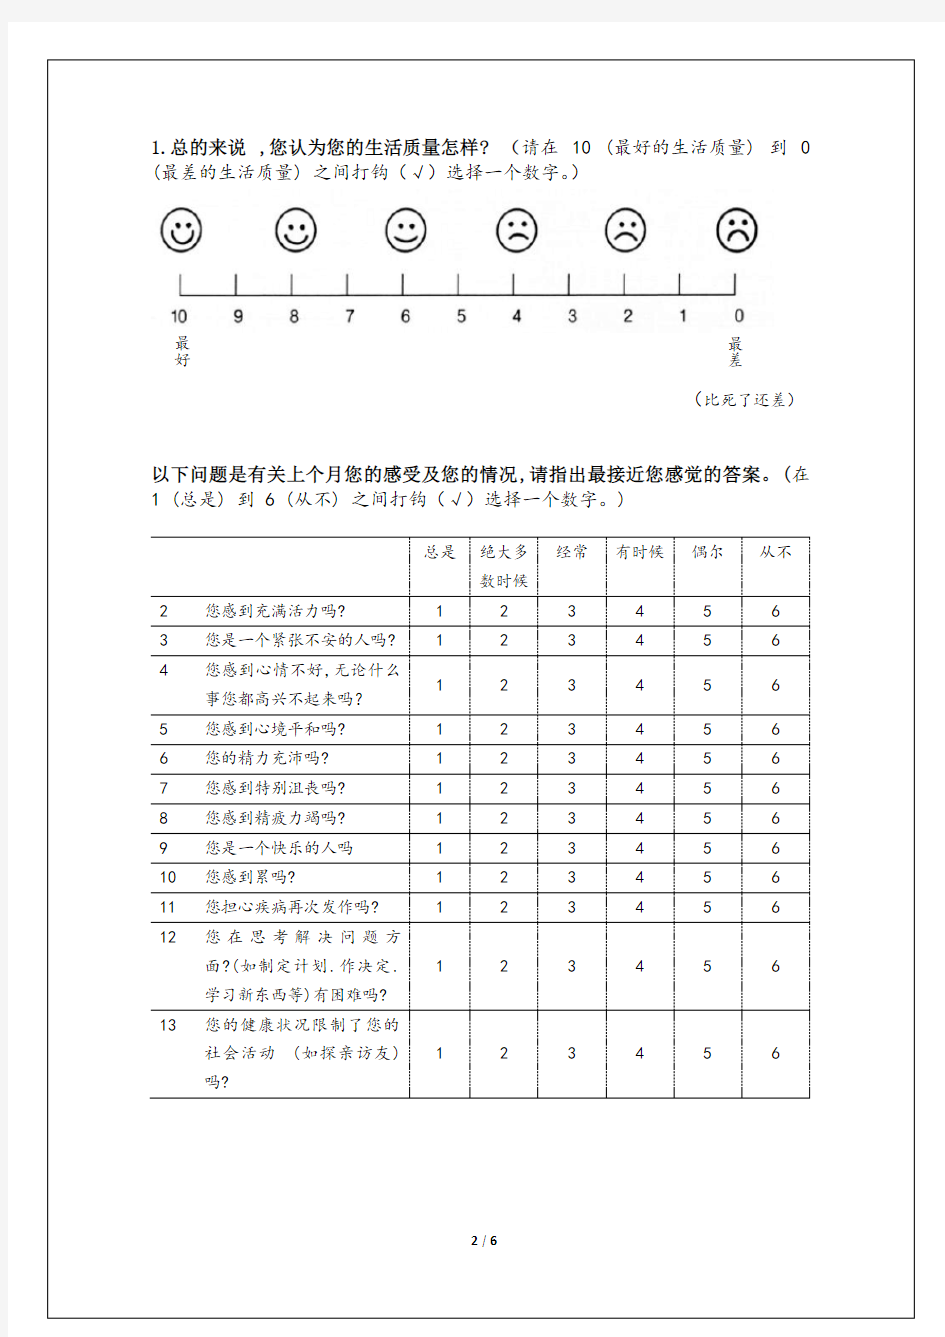 癫痫患者生活质量评定量表(QOLIE-31)_中文版